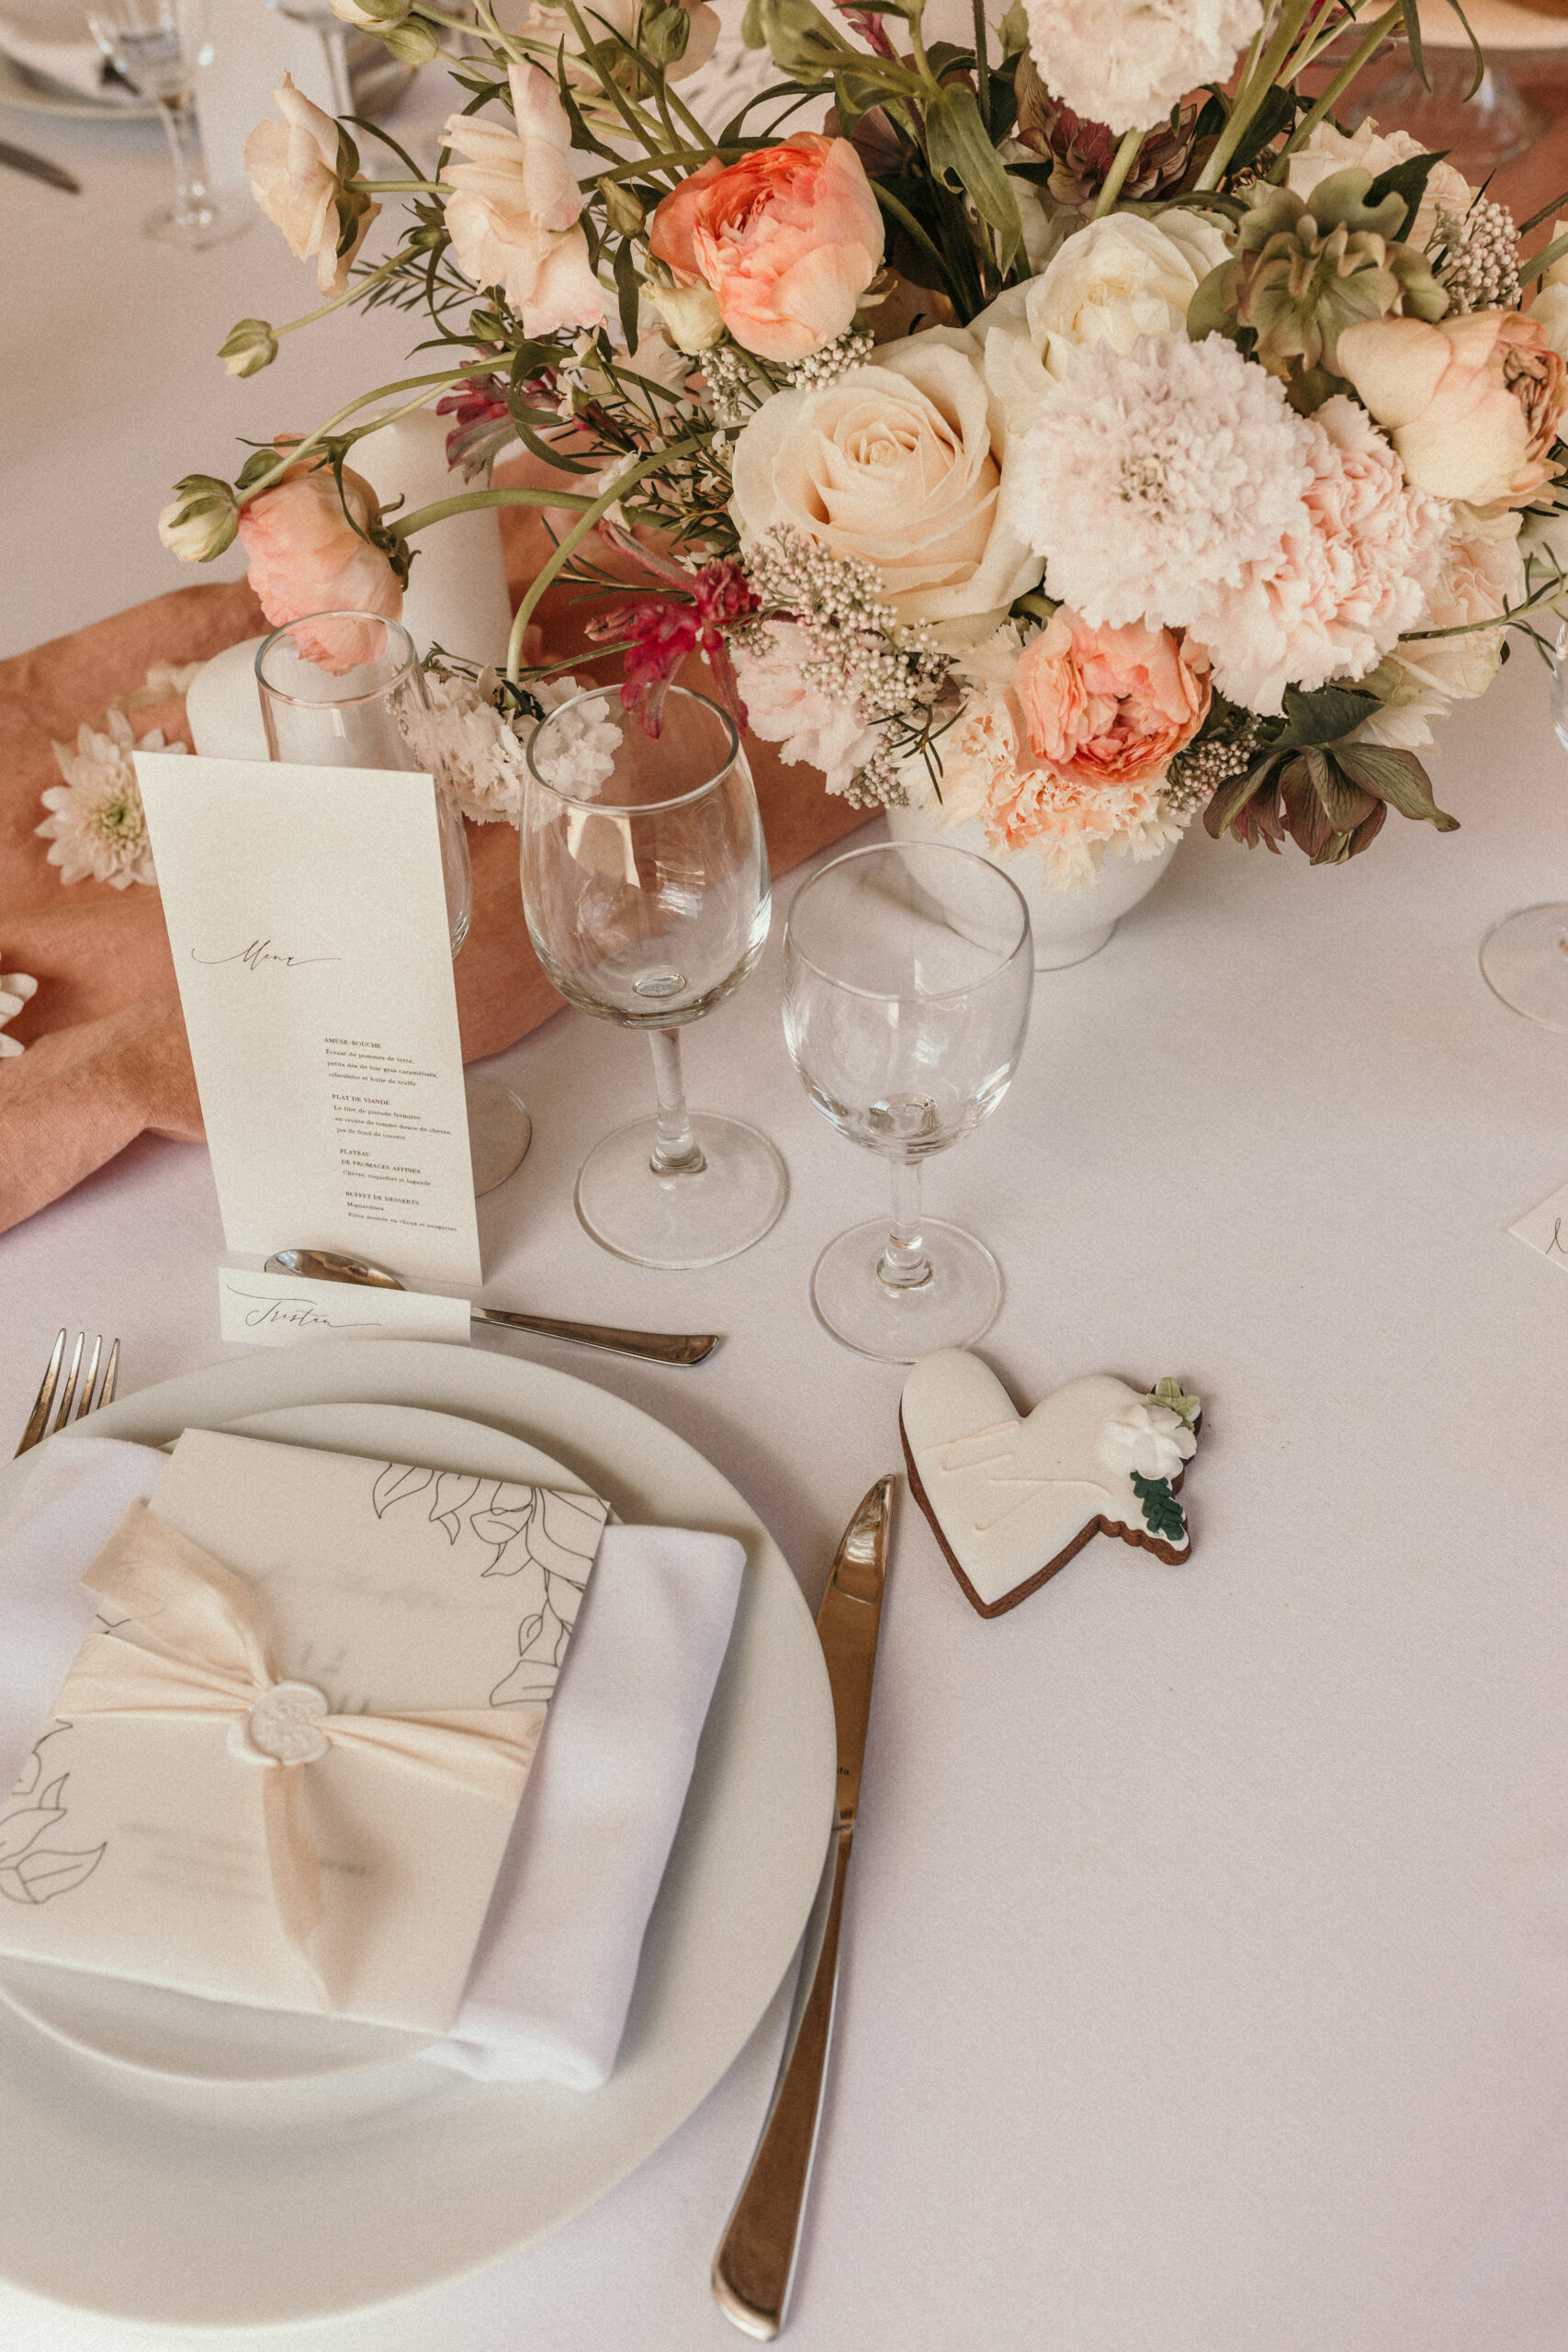 table de mariage, décoration de table mariage, assiette location Gard, sablés personnalisés mariage, menu mariage, inspiration mariage chic dans le Gard